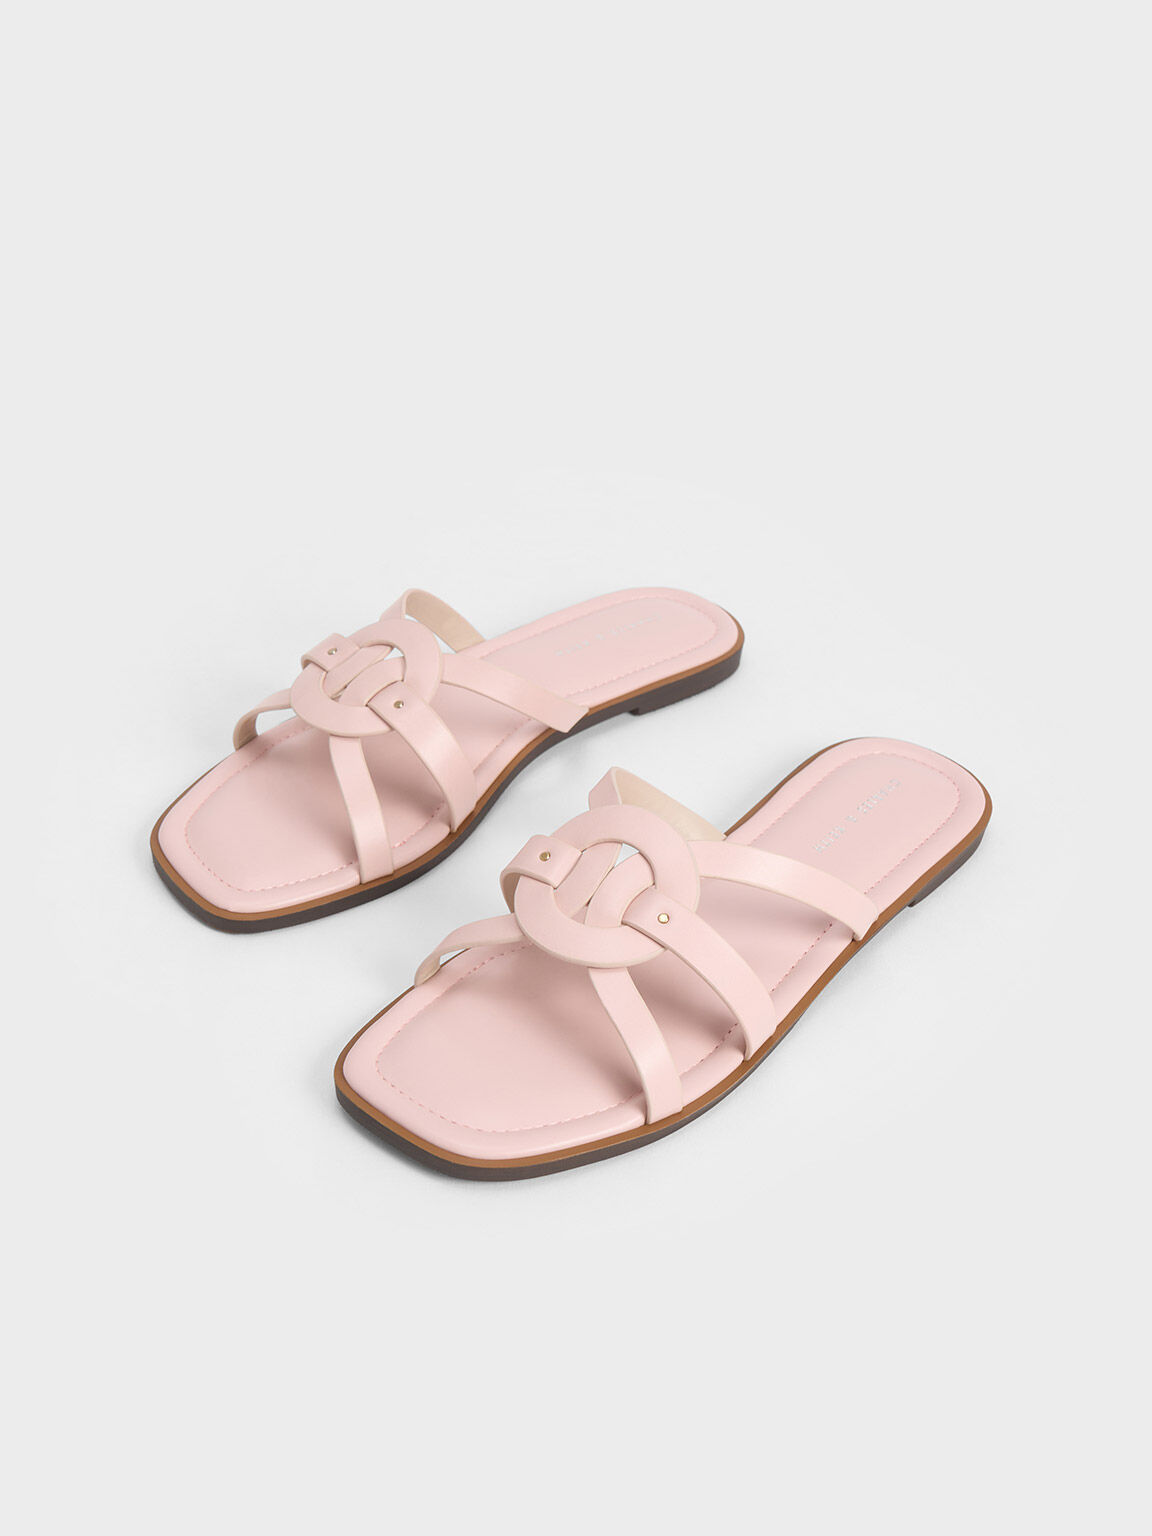 編織圓環拖鞋, 淺粉色, hi-res